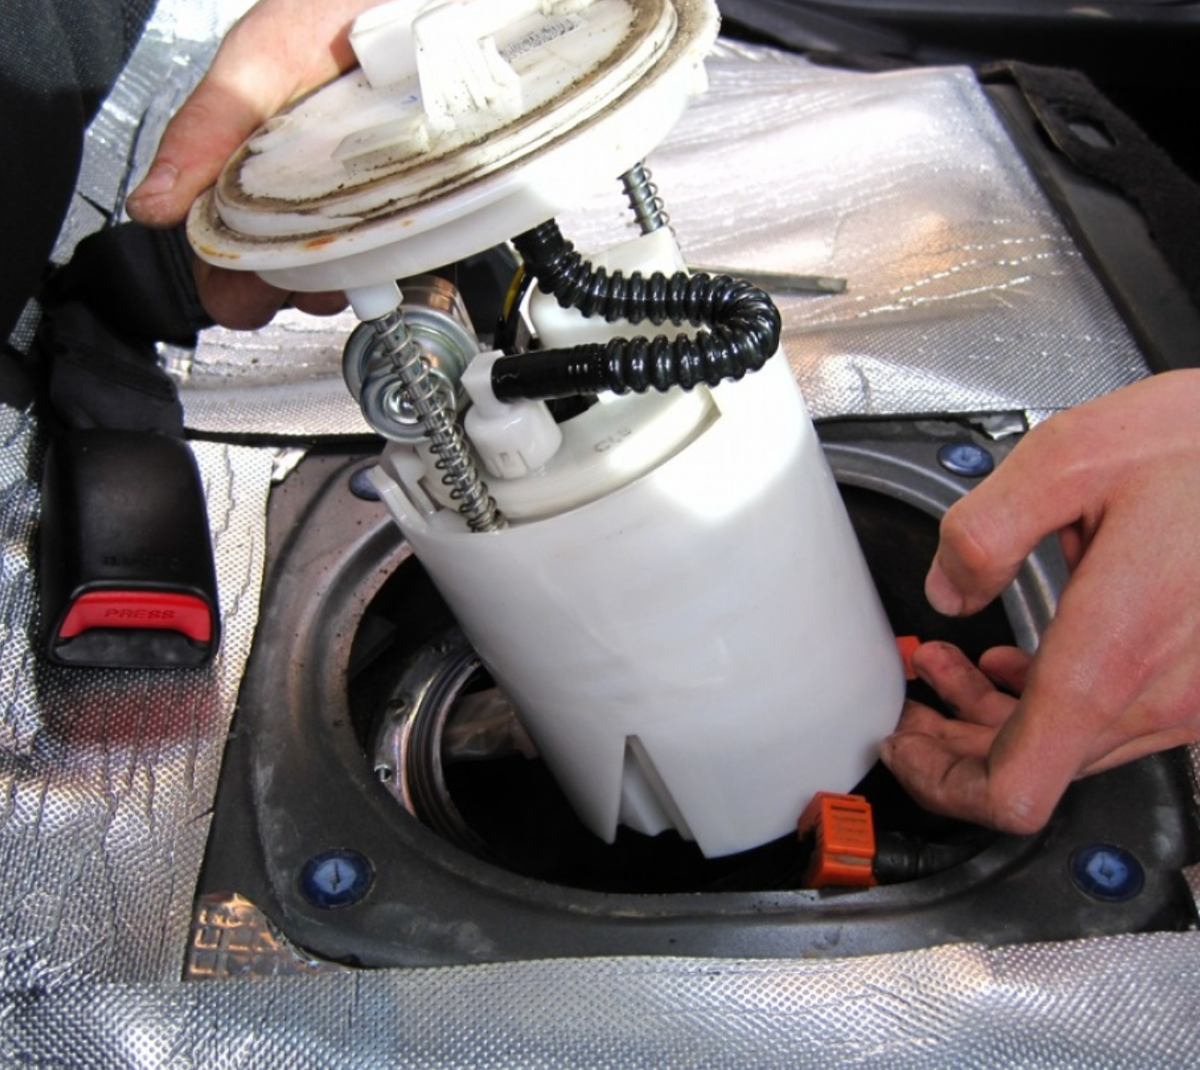 Все автомобили оснащаются топливными фильтрами, которые имеют определенный срок службы. В инструкции к автомобилю указано, с какой периодичностью производить замену топливного фильтра.